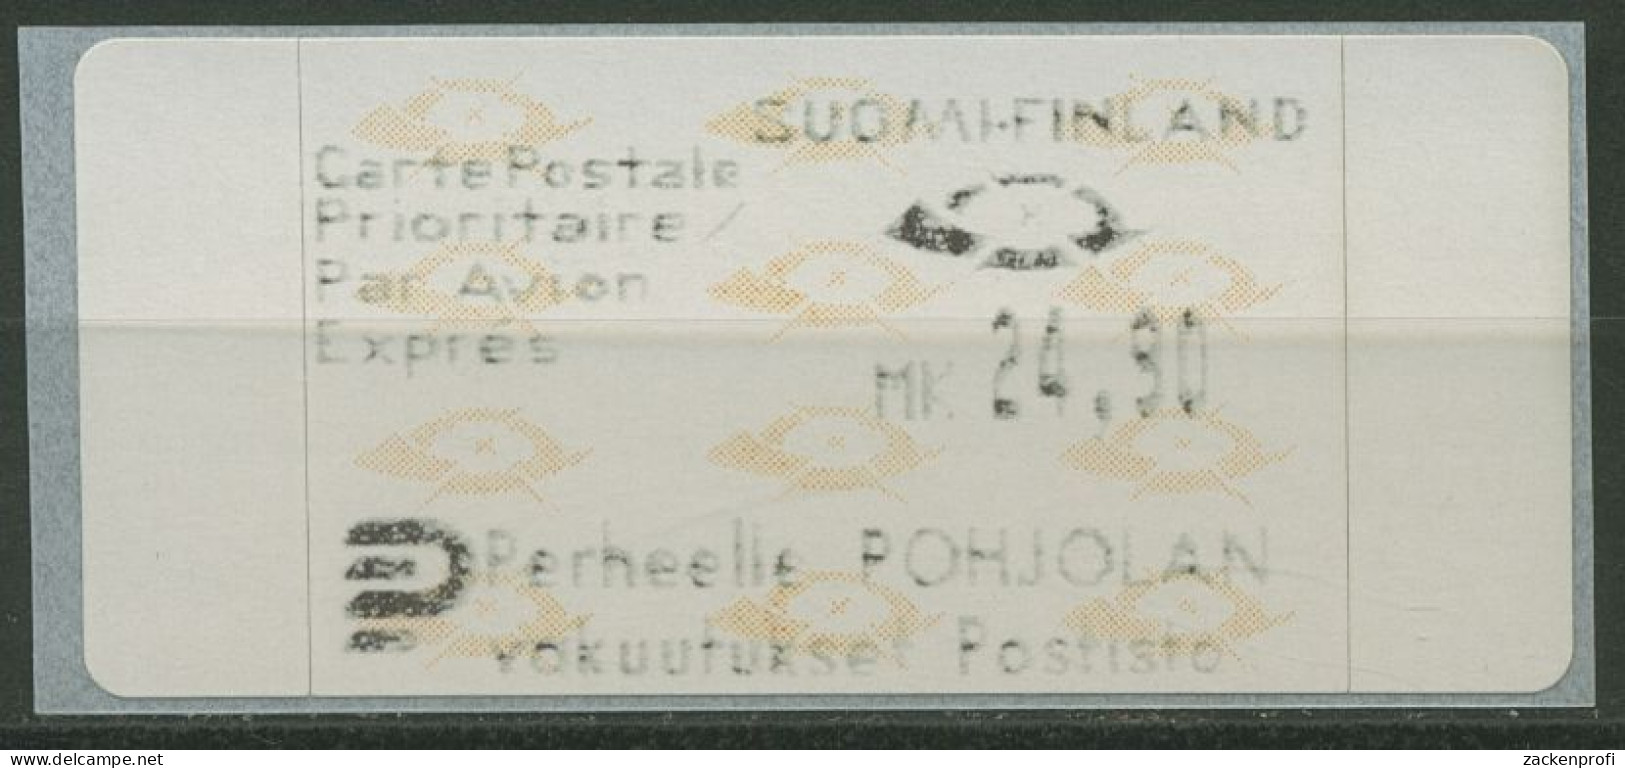 Finnland Automatenmarken 1992 Posthörner Einzelwert ATM 12.3 Z4 Postfrisch - Vignette [ATM]